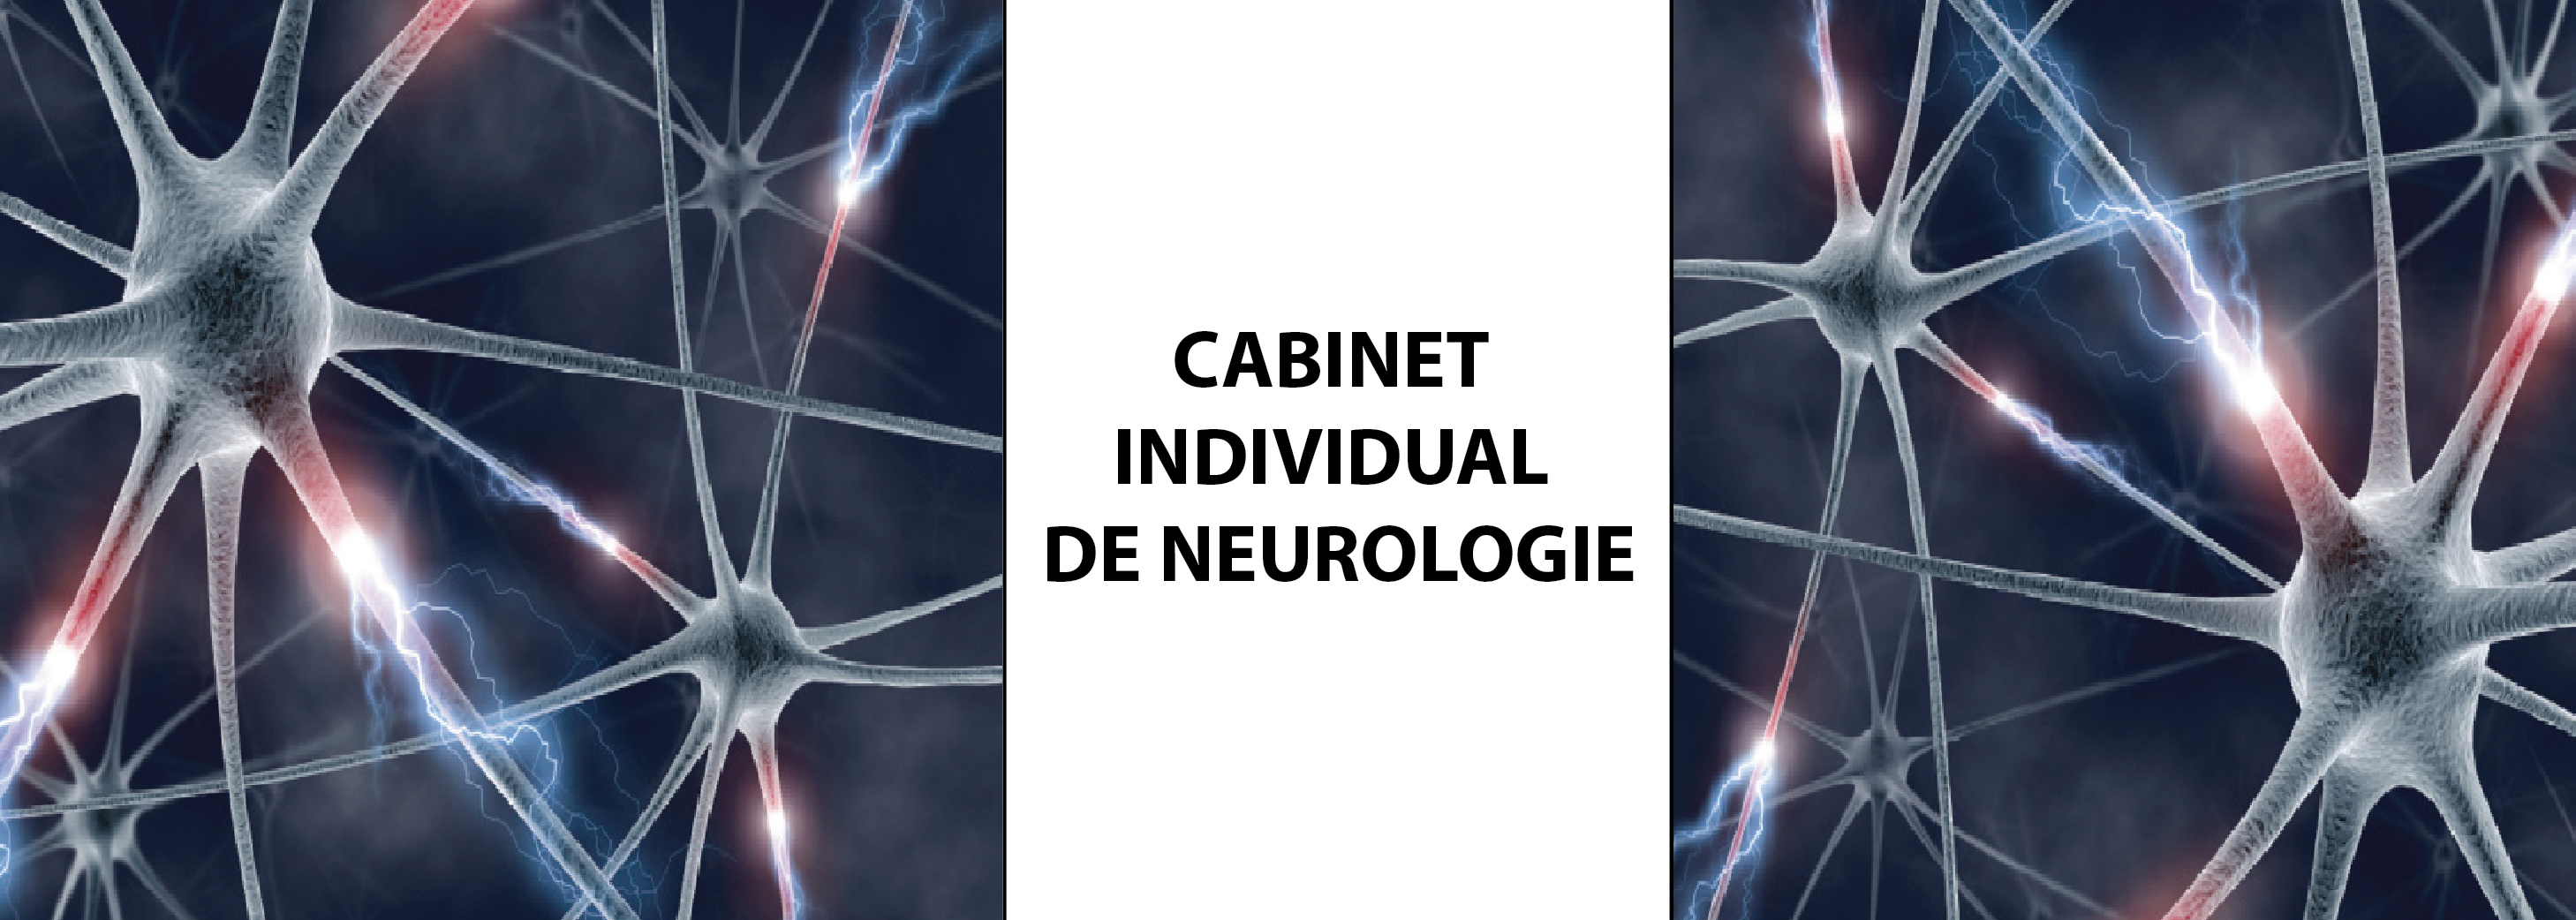 cabinet neurologie prof. dr. stefania kory calomfirescu